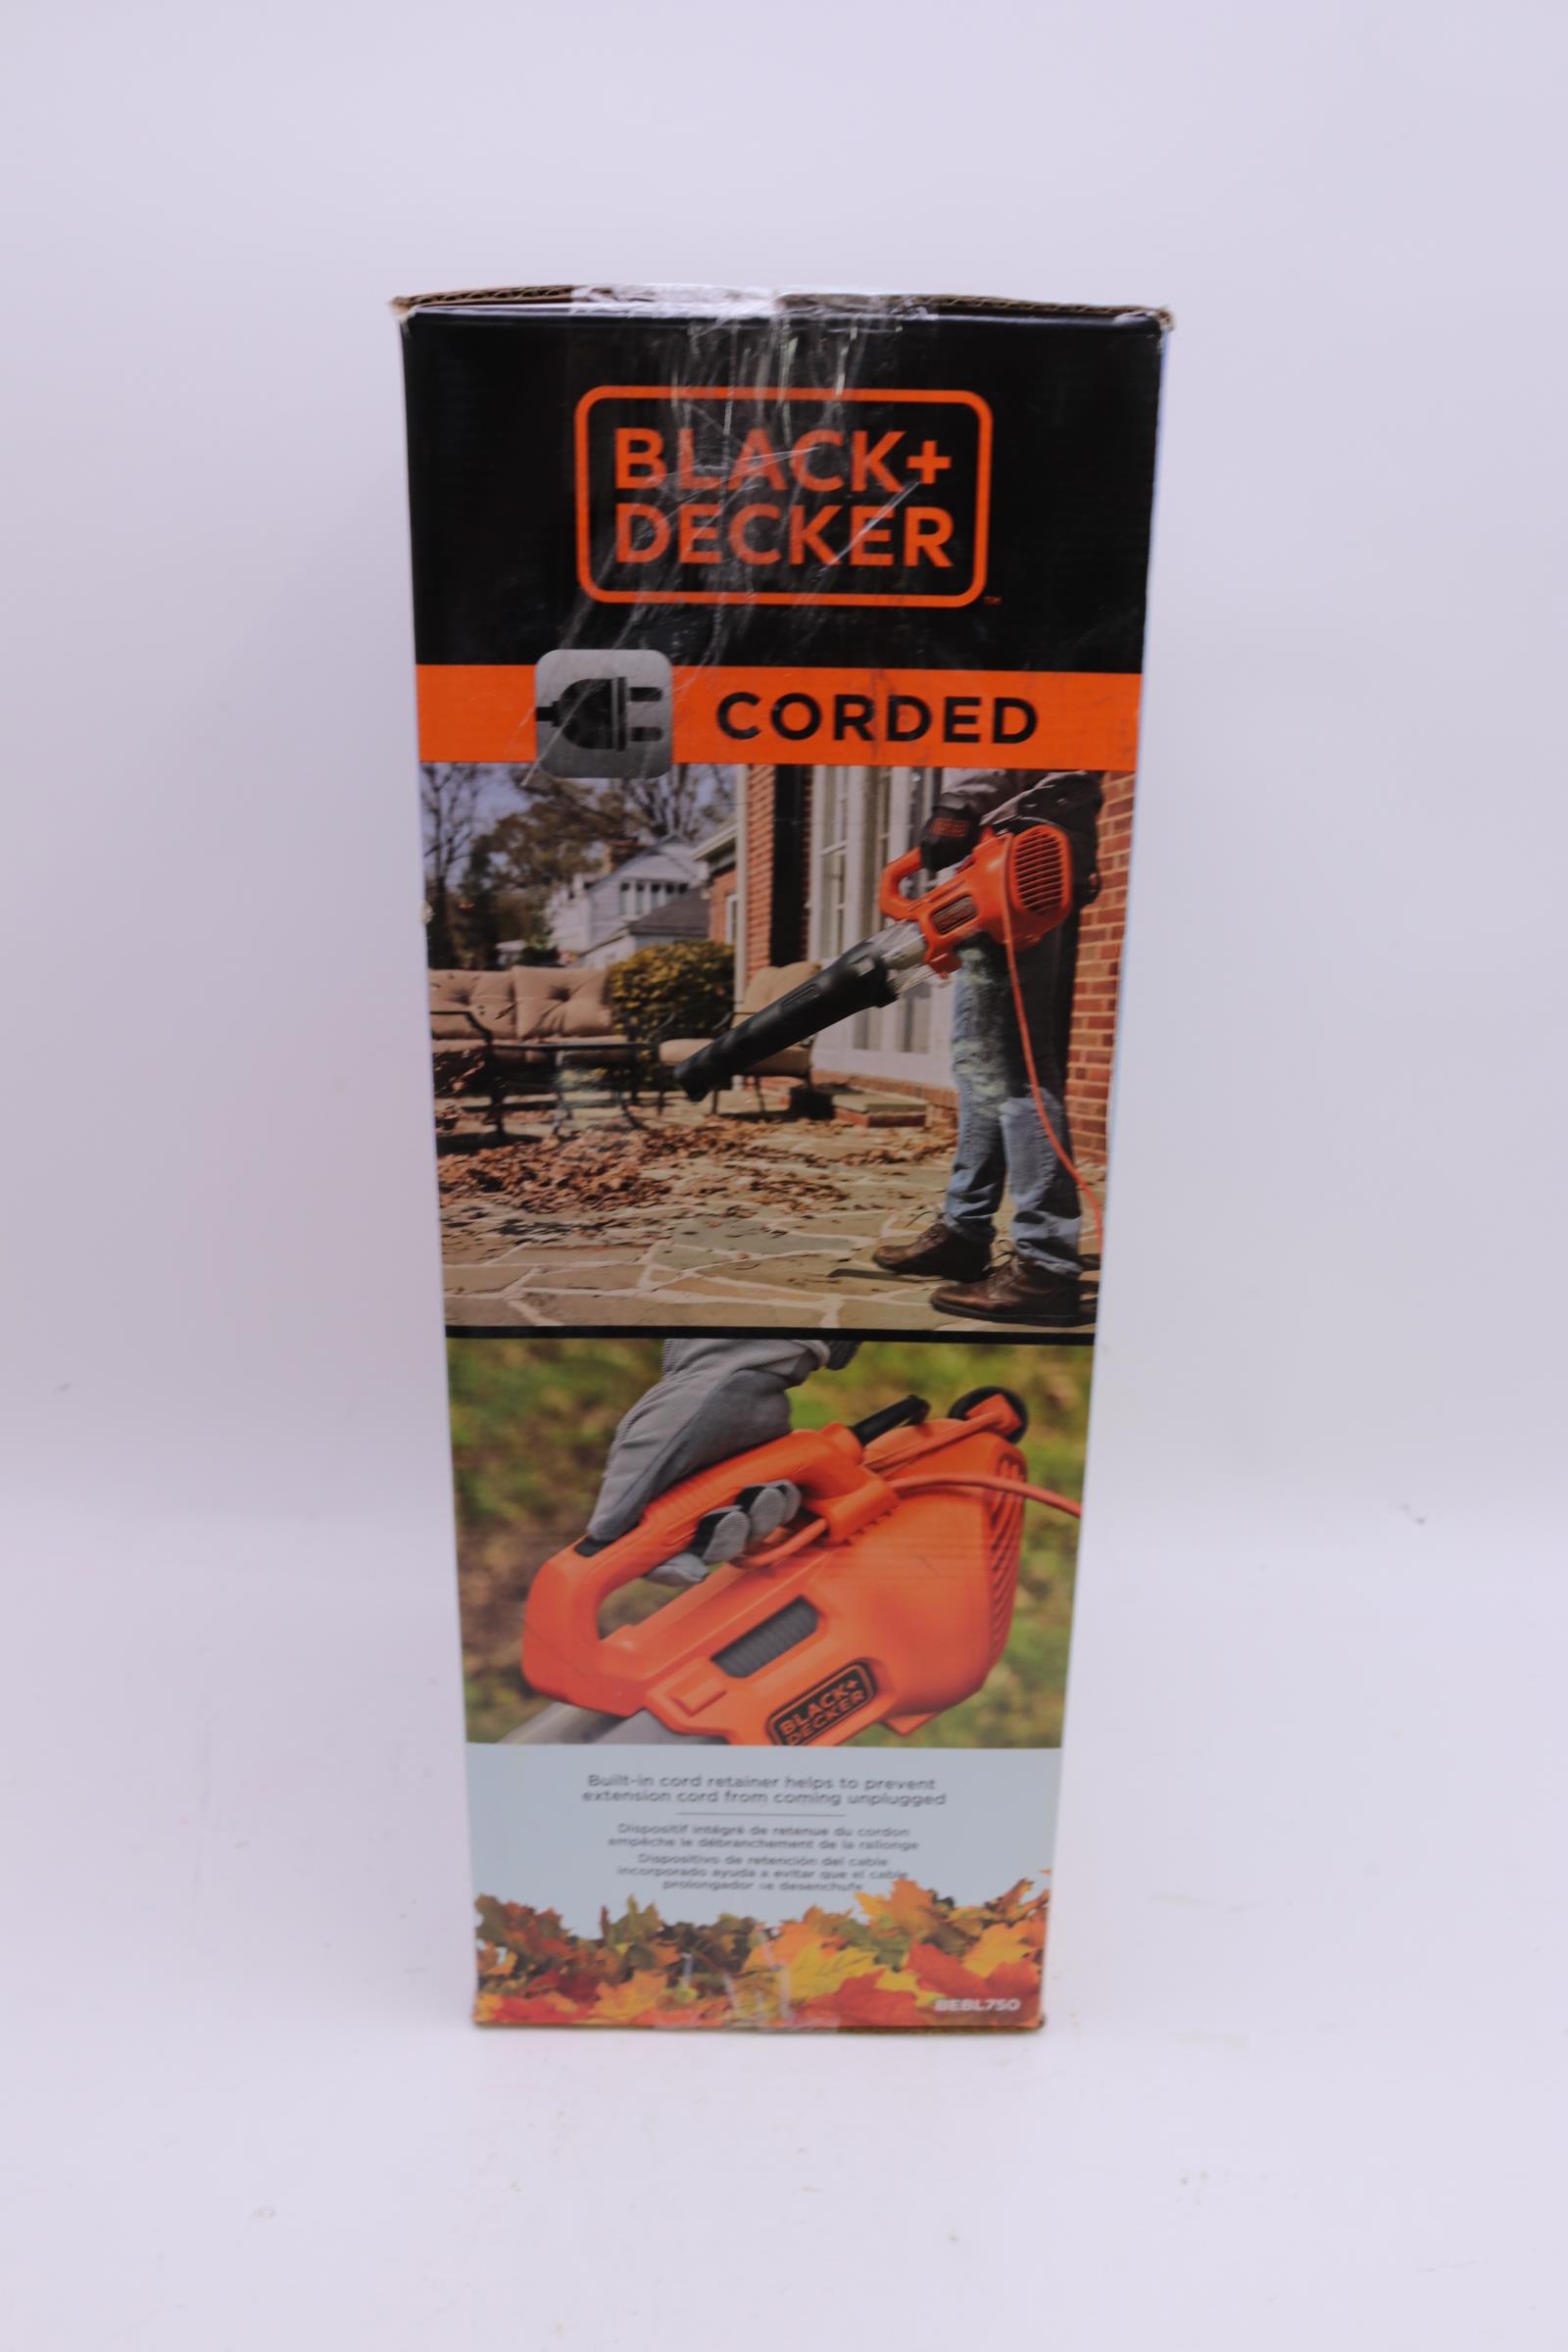 Black & Decker BEBL750 9 Amp Electric Axial Leaf Blower